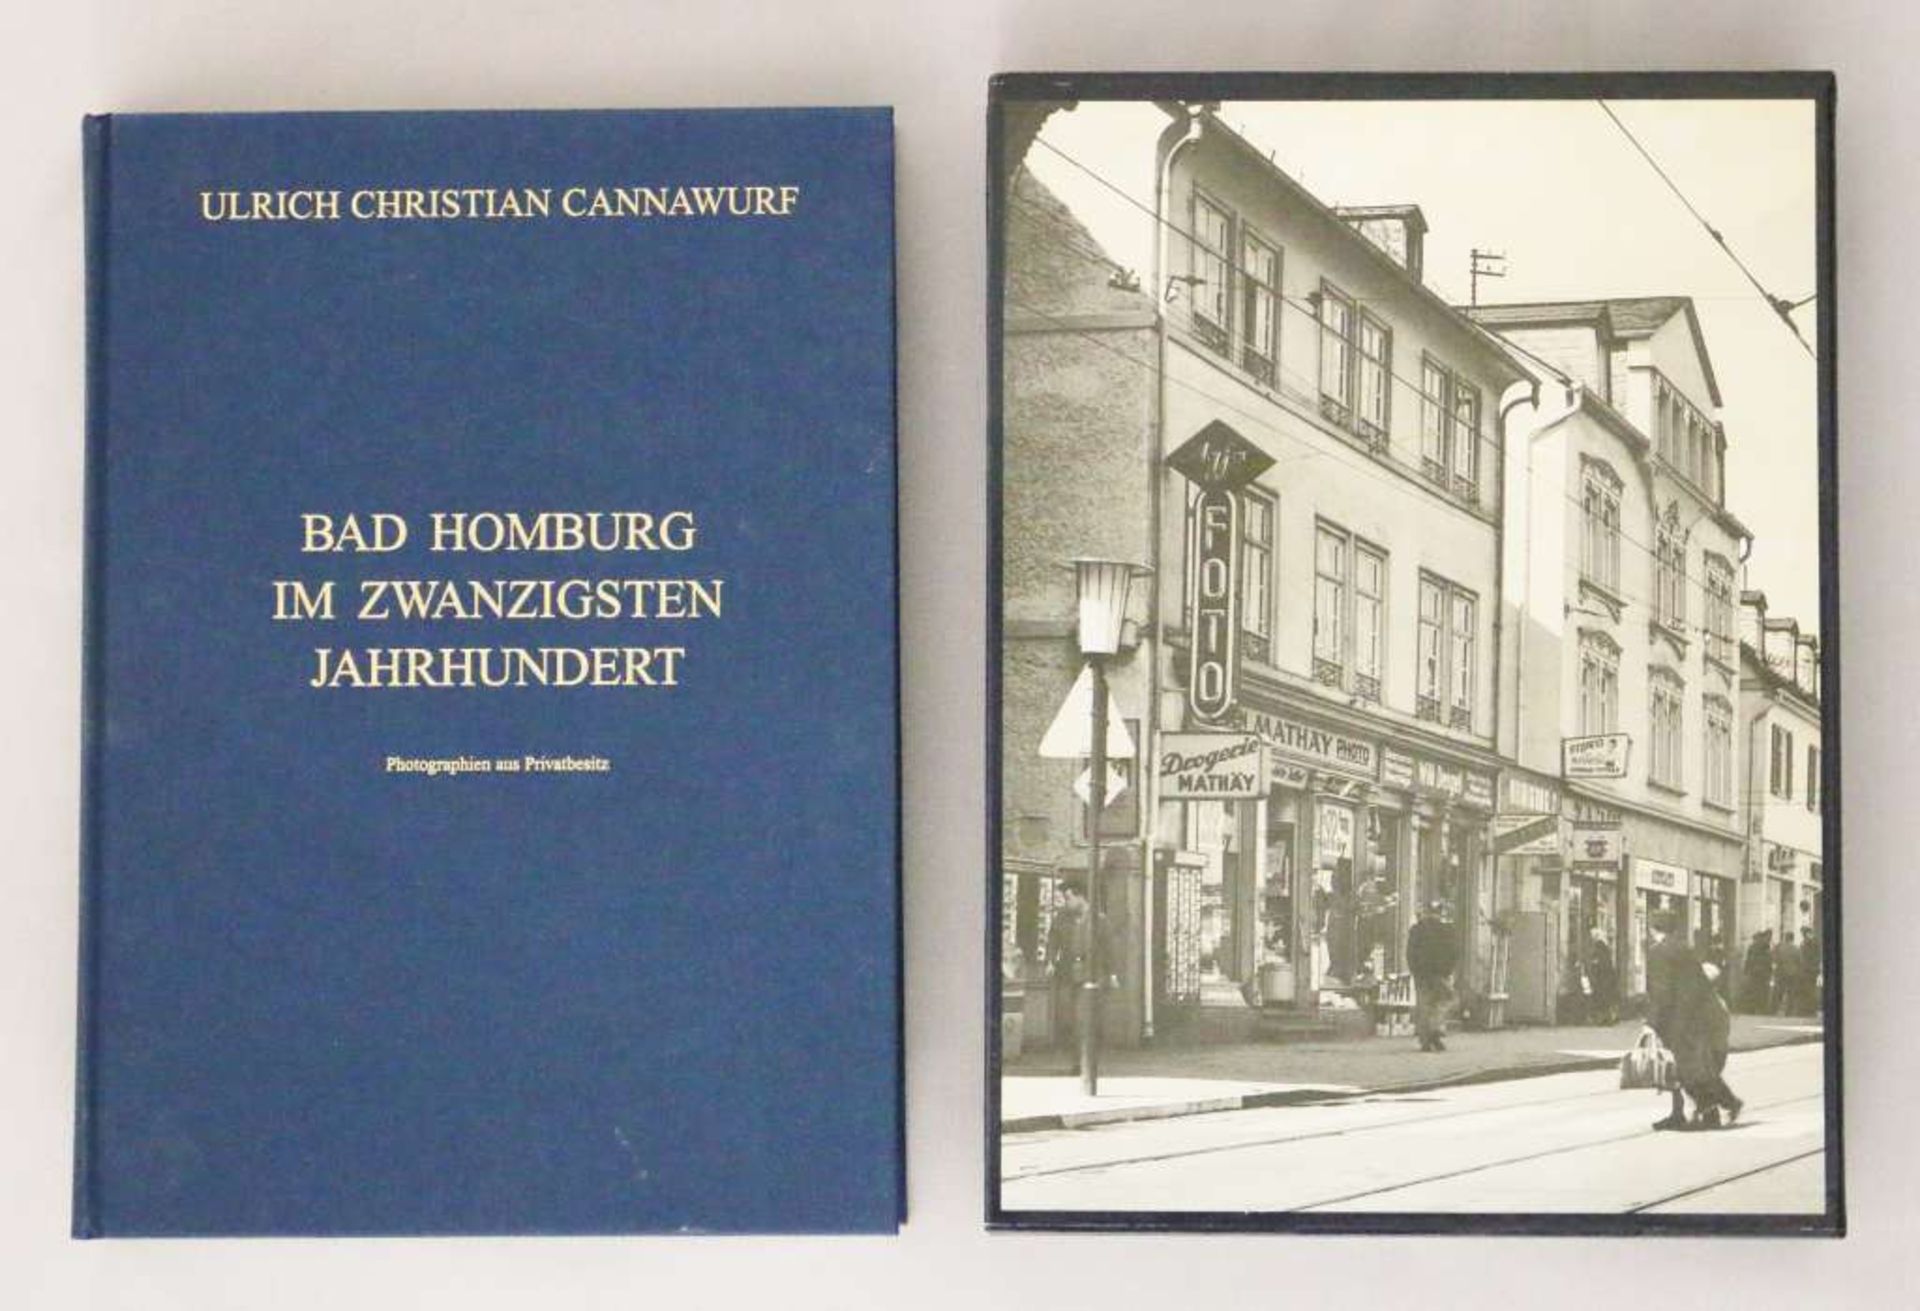 Ulrich Christian Cannawurf, Bad Homburg im zwanzigsten Jahrhundert. Photographien aus